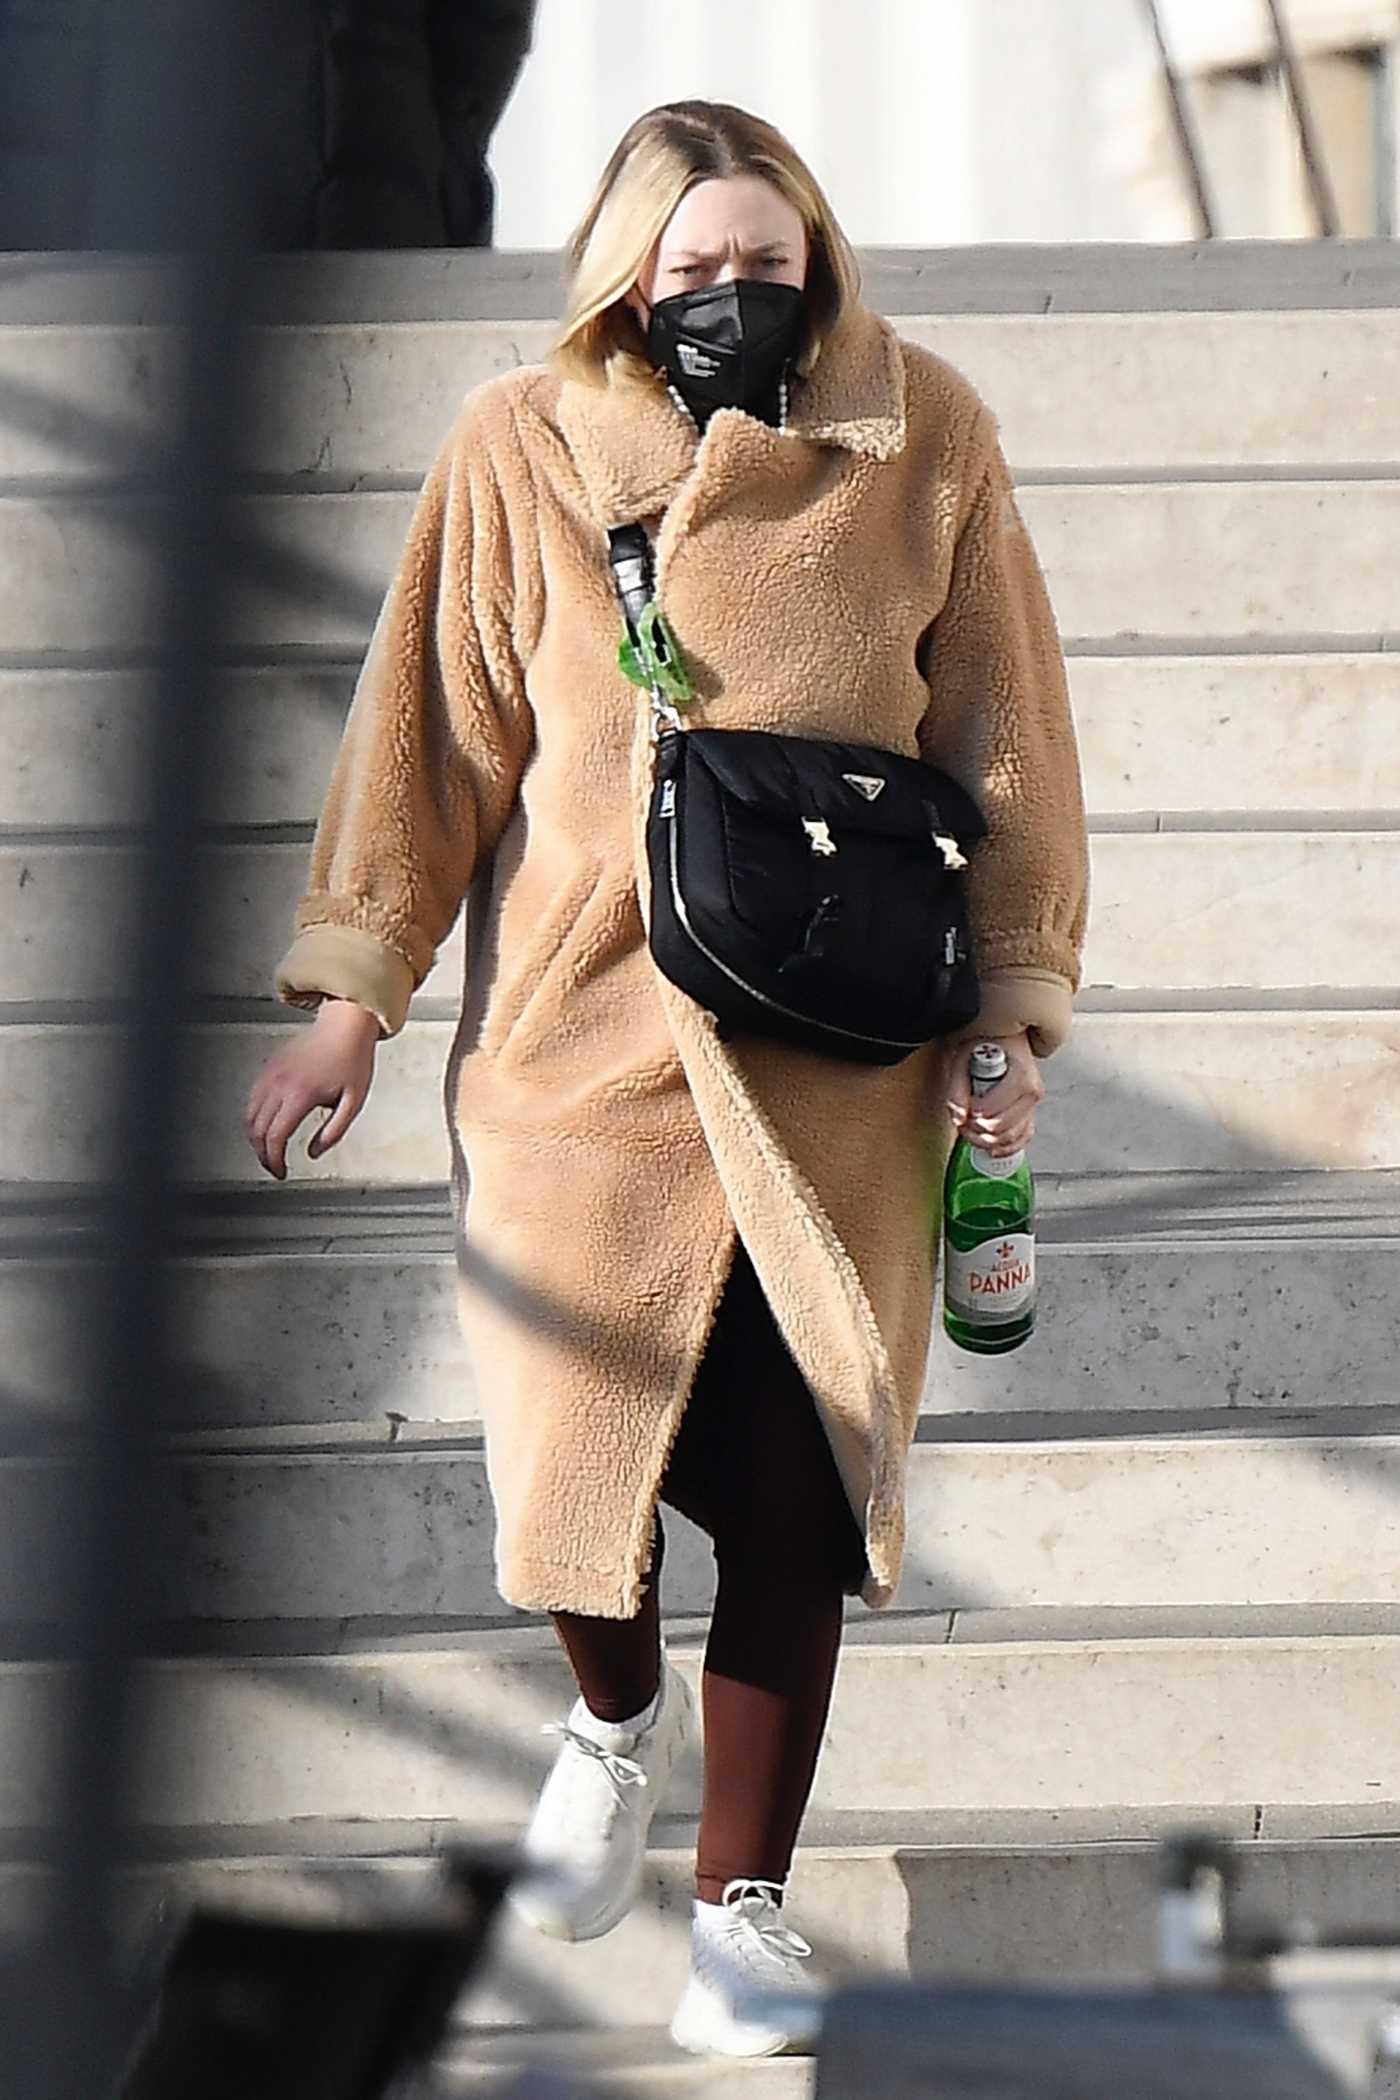 Dakota Fanning in a Beige Faux Fur Coat Was Seen Out in Venice 01/29/2022